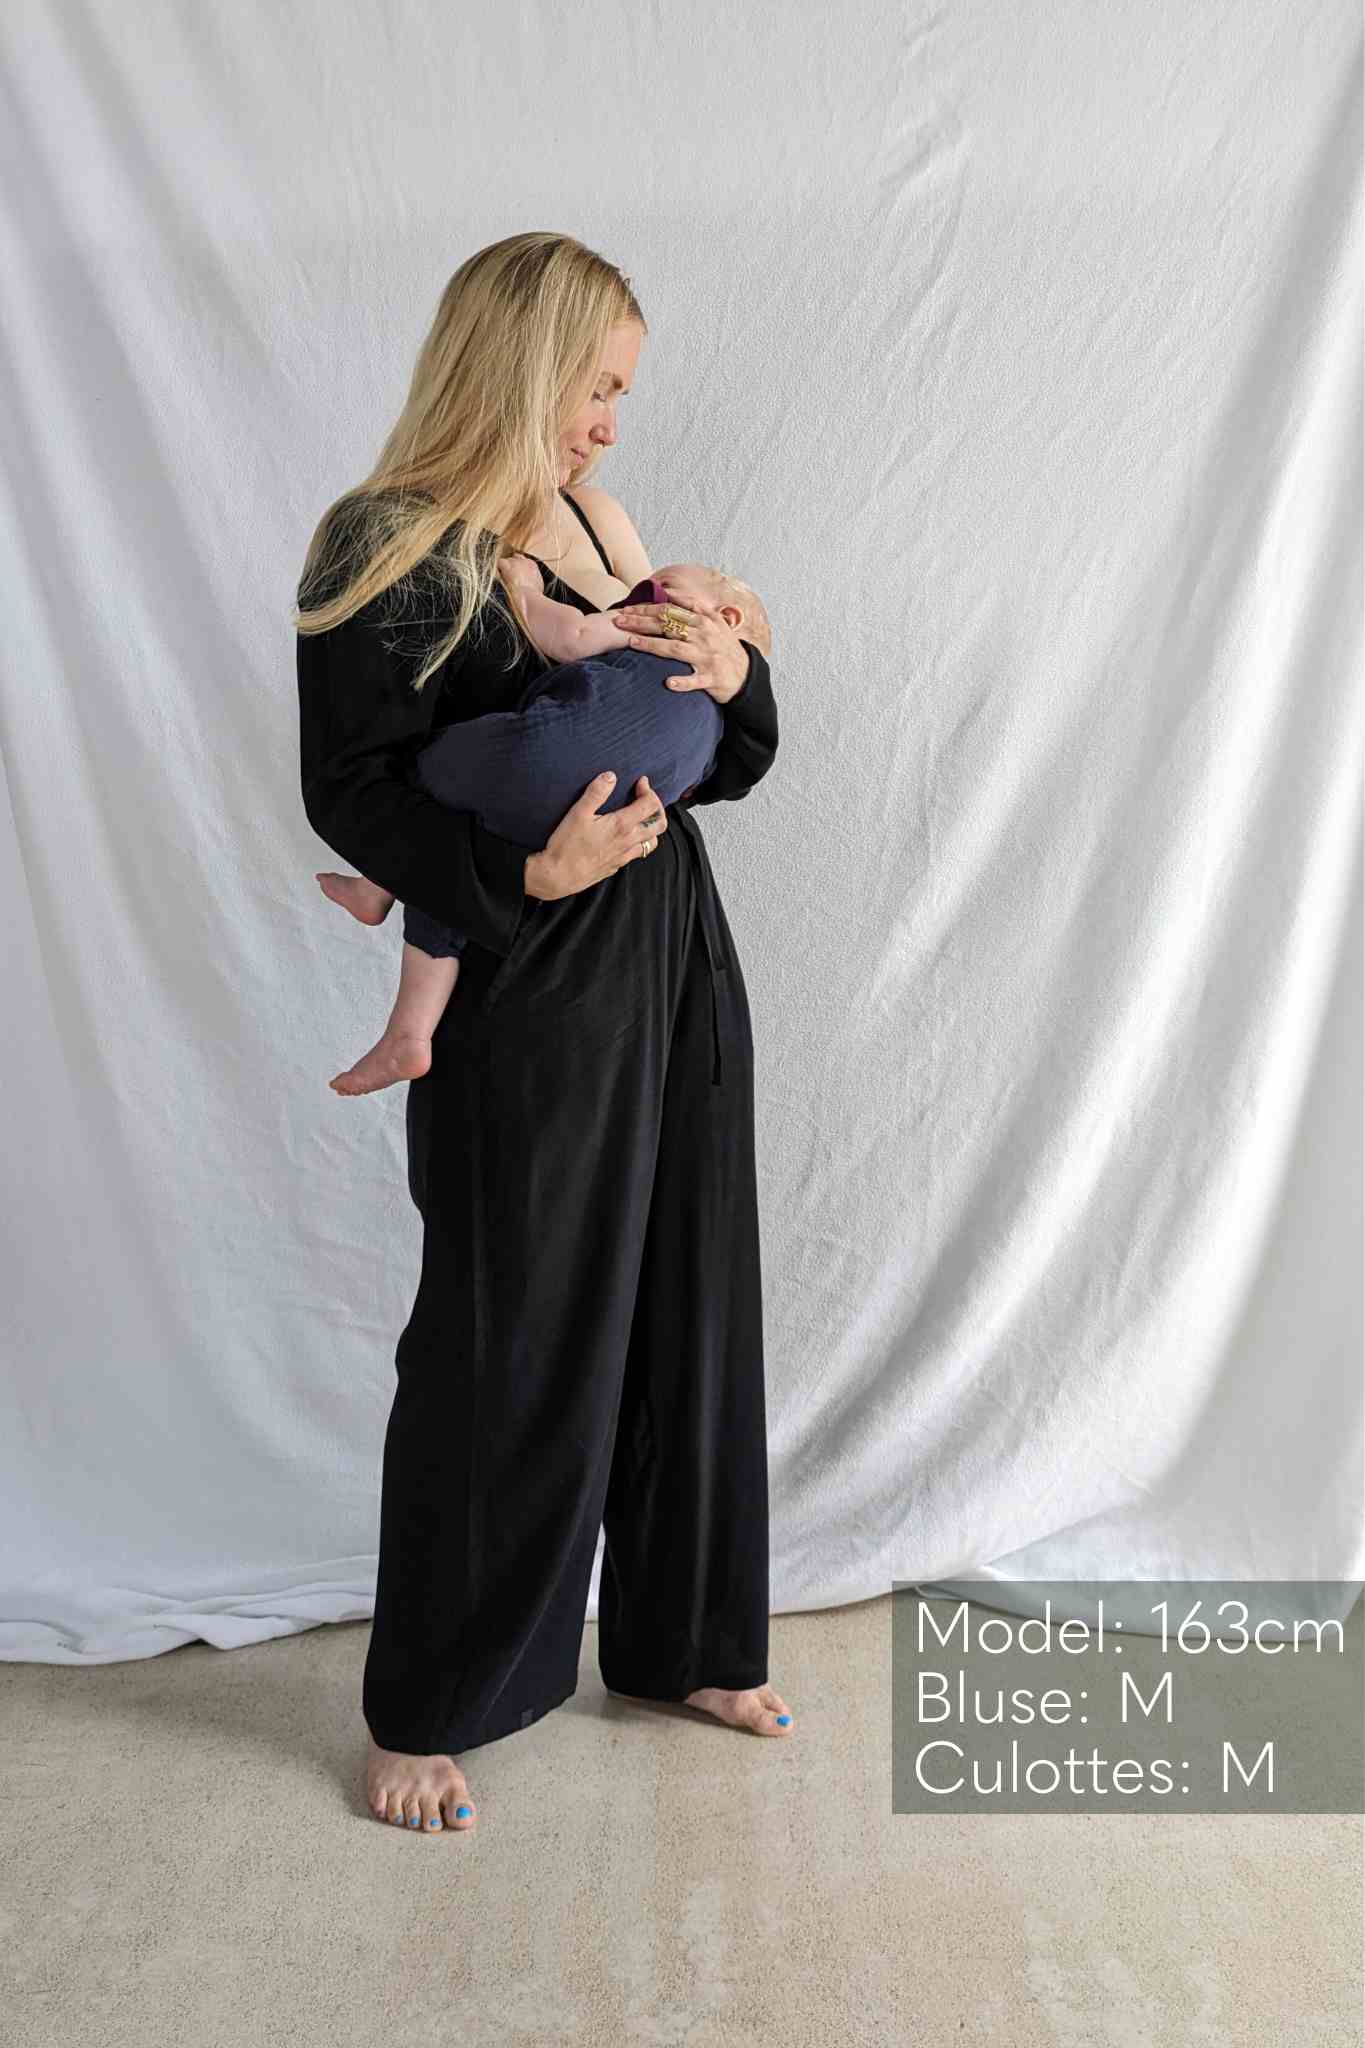 Frau im schwarzer Bluse und Culotte trägt Baby auf dem Arm.